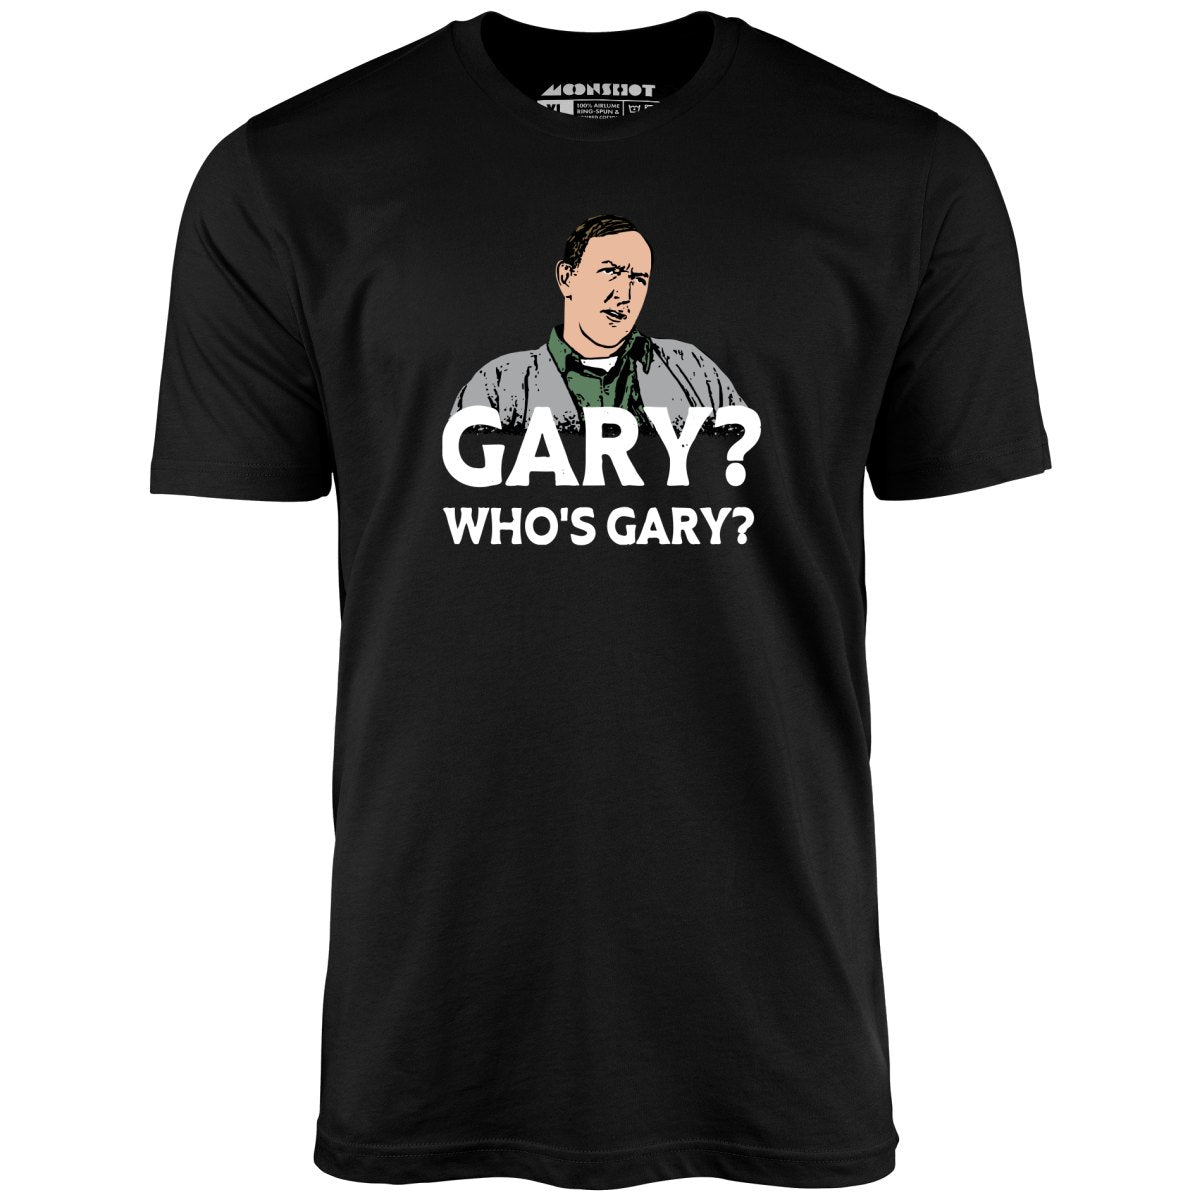 Gary? Who's Gary? - Unisex T-Shirt